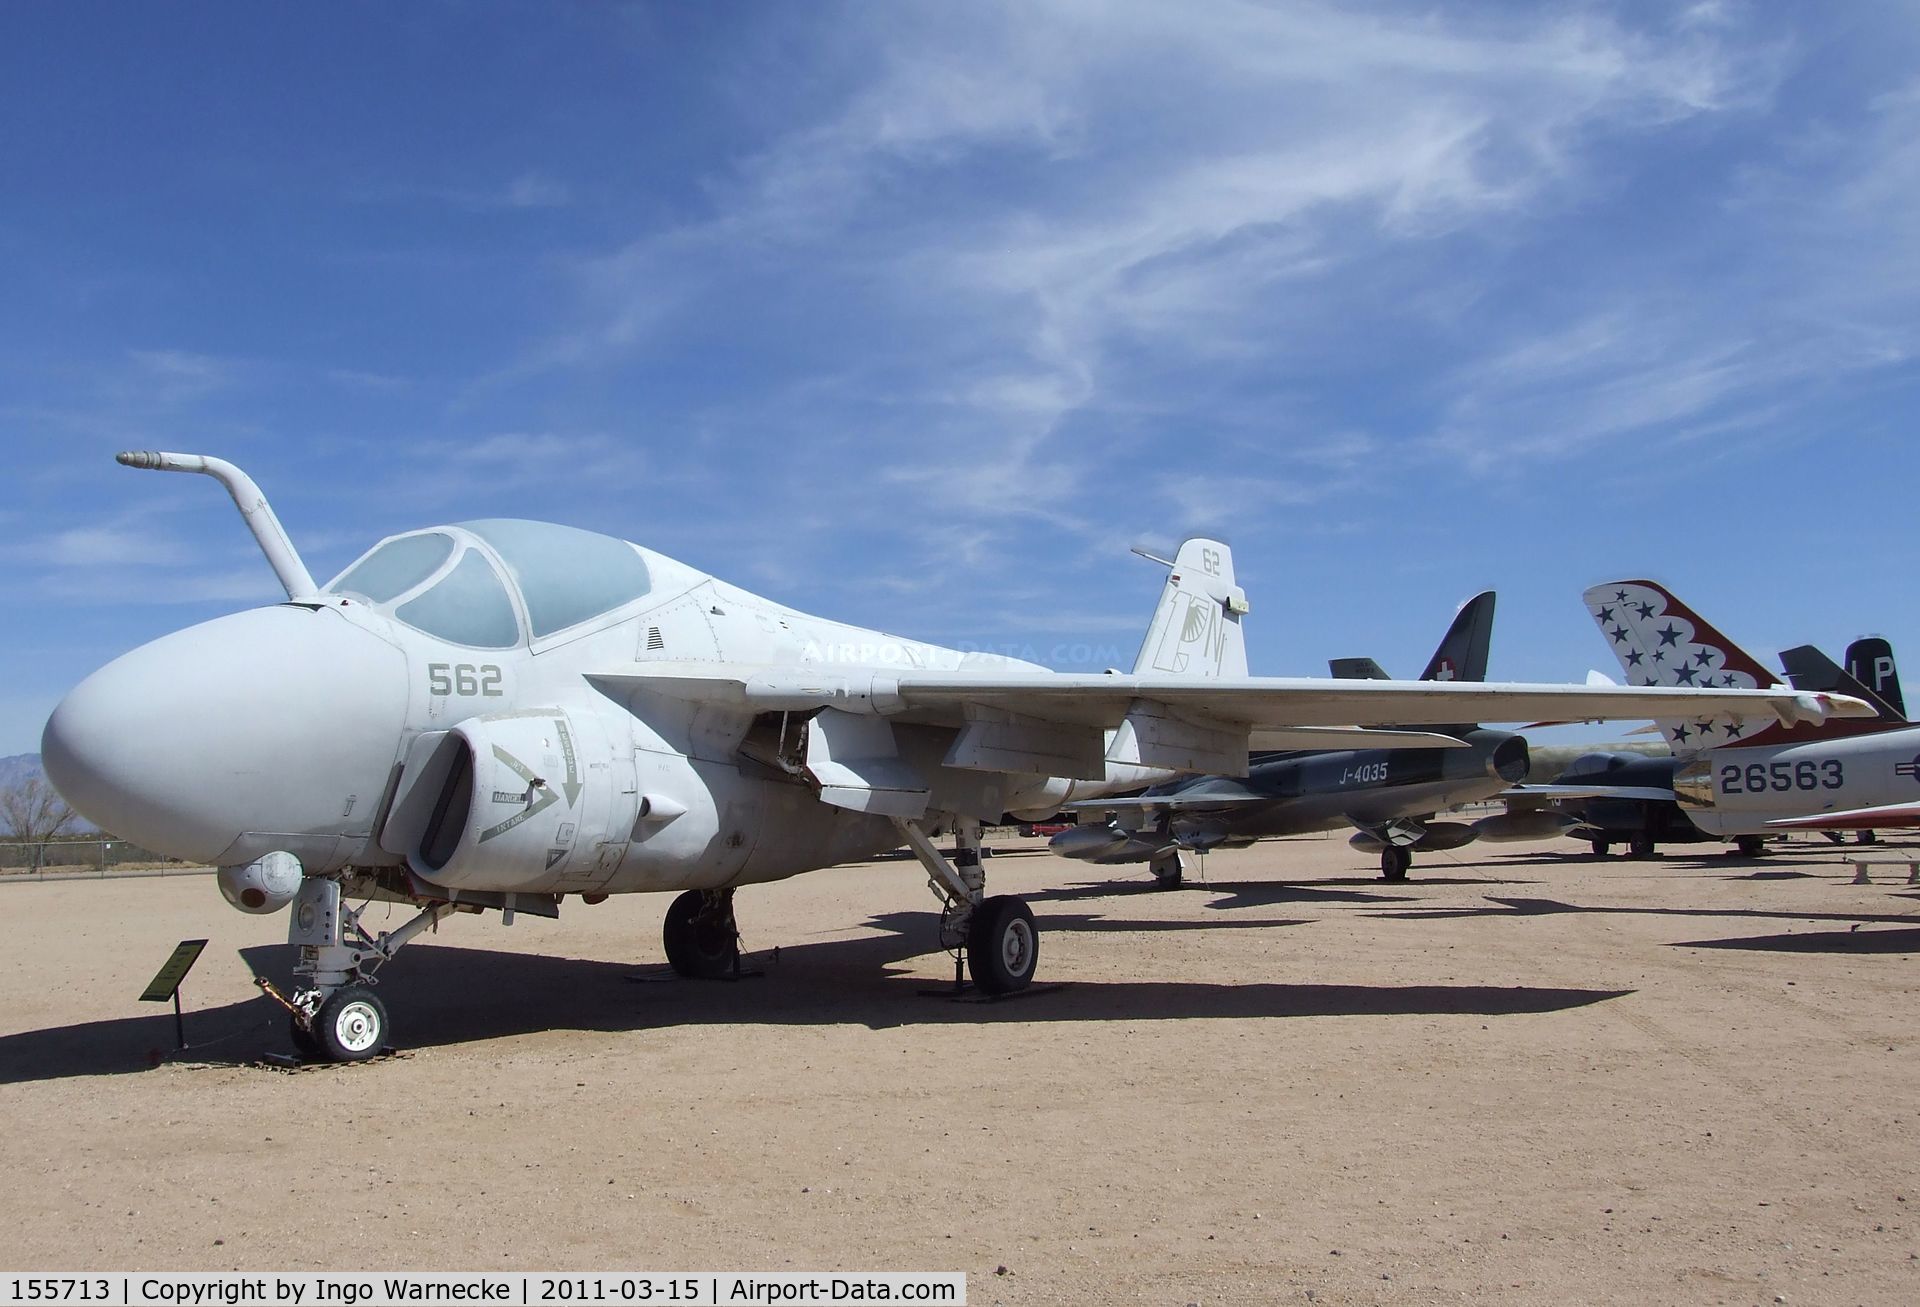 155713, Grumman A-6E Intruder C/N I-439, Grumman A-6E Intruder at the Pima Air & Space Museum, Tucson AZ